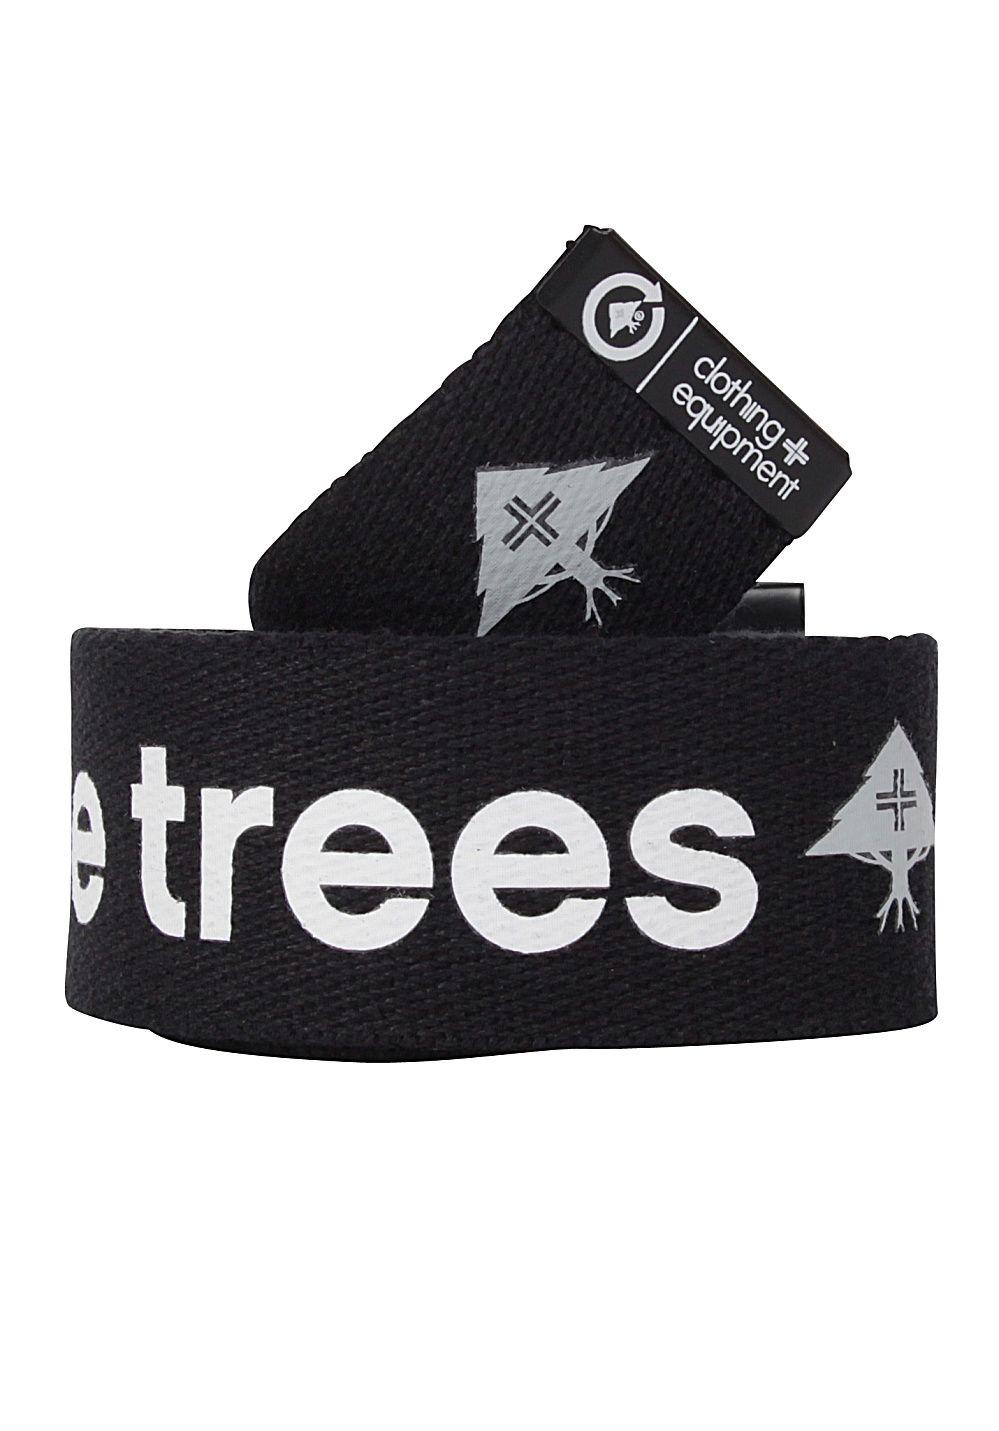 LRG Hustle Trees Logo - LRG Hustle Trees Belt - Belt for Men - Black - Planet Sports